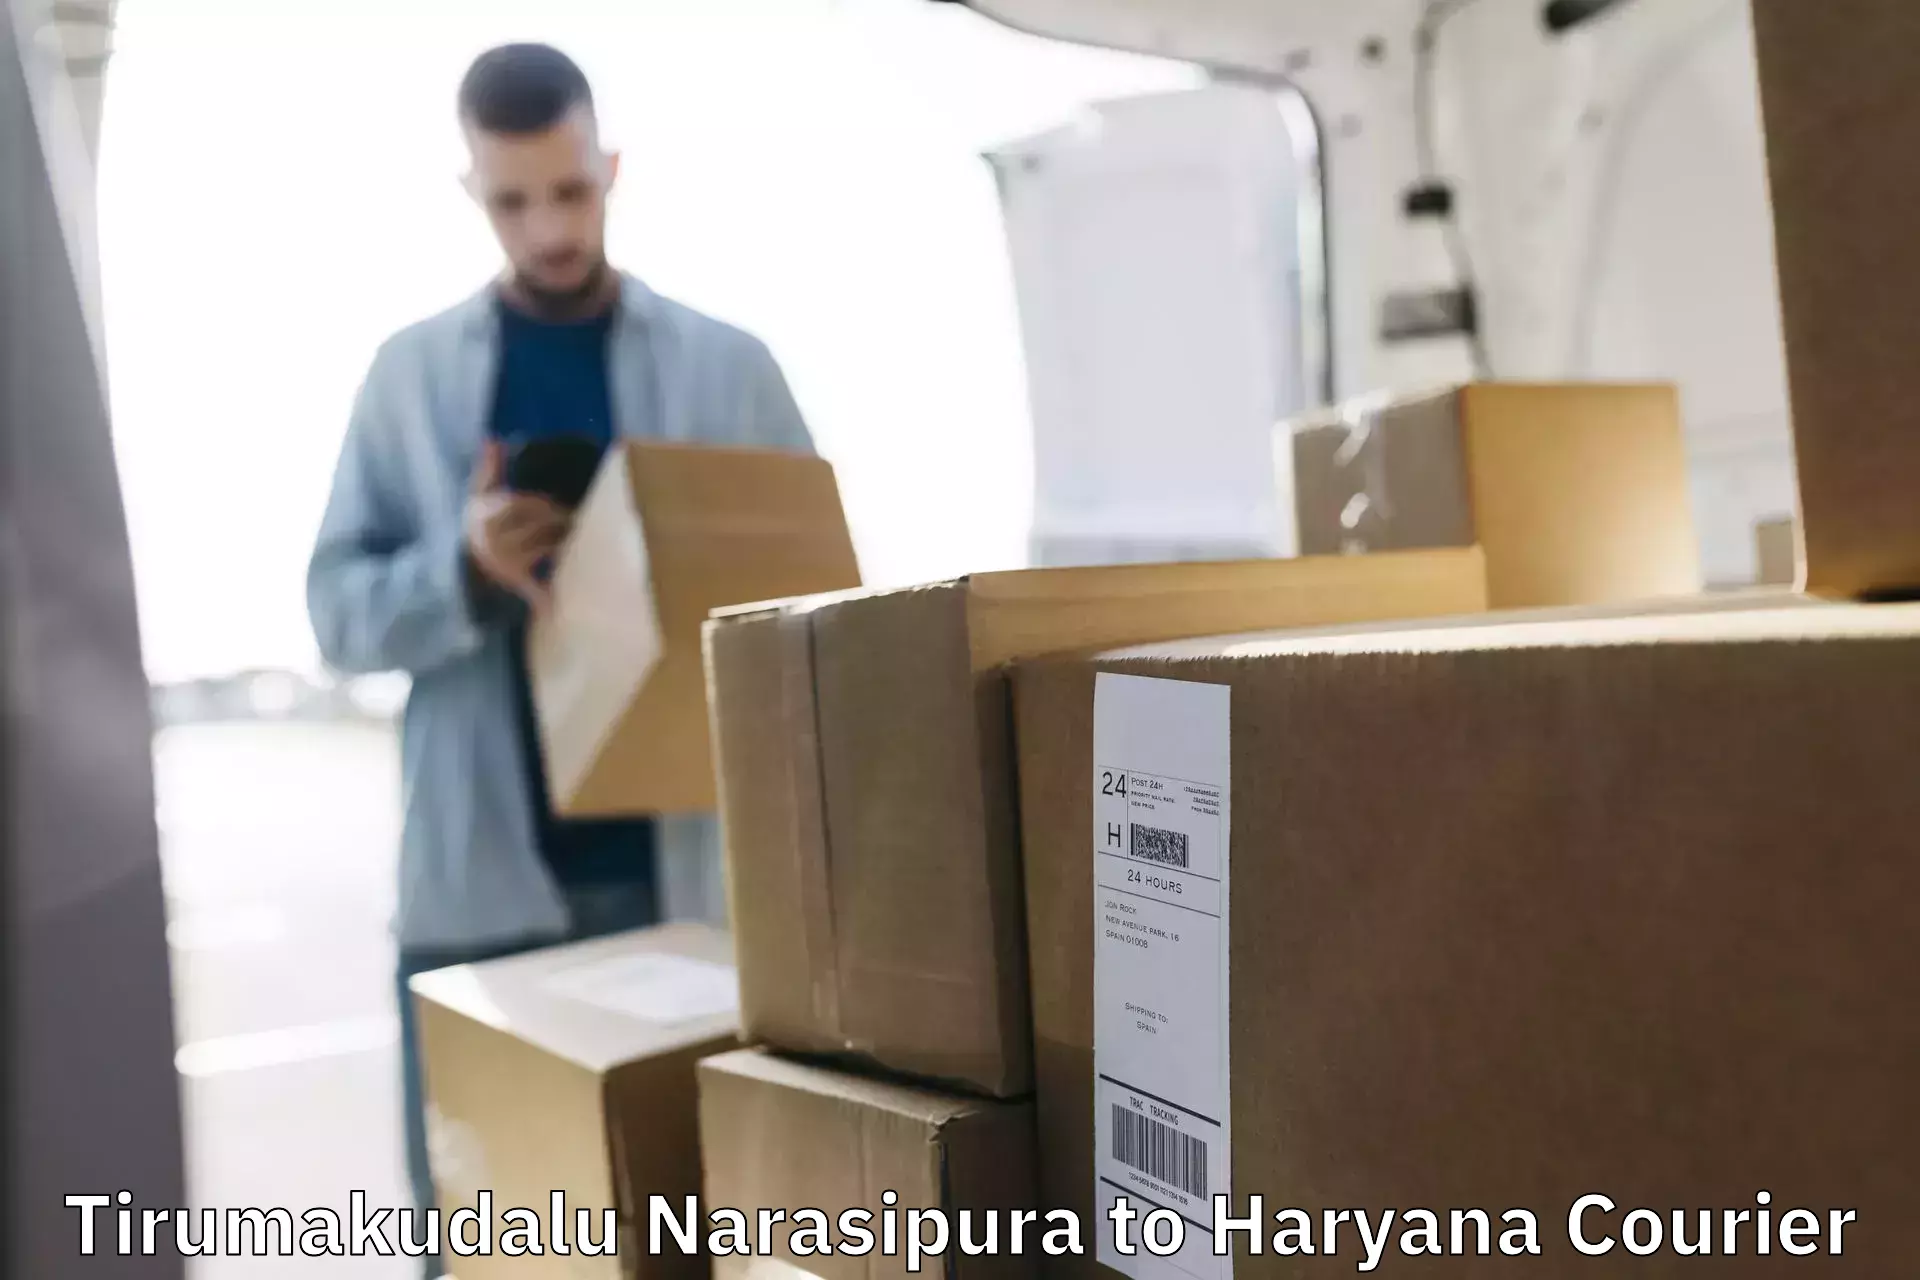 Expedited shipping methods Tirumakudalu Narasipura to Odhan